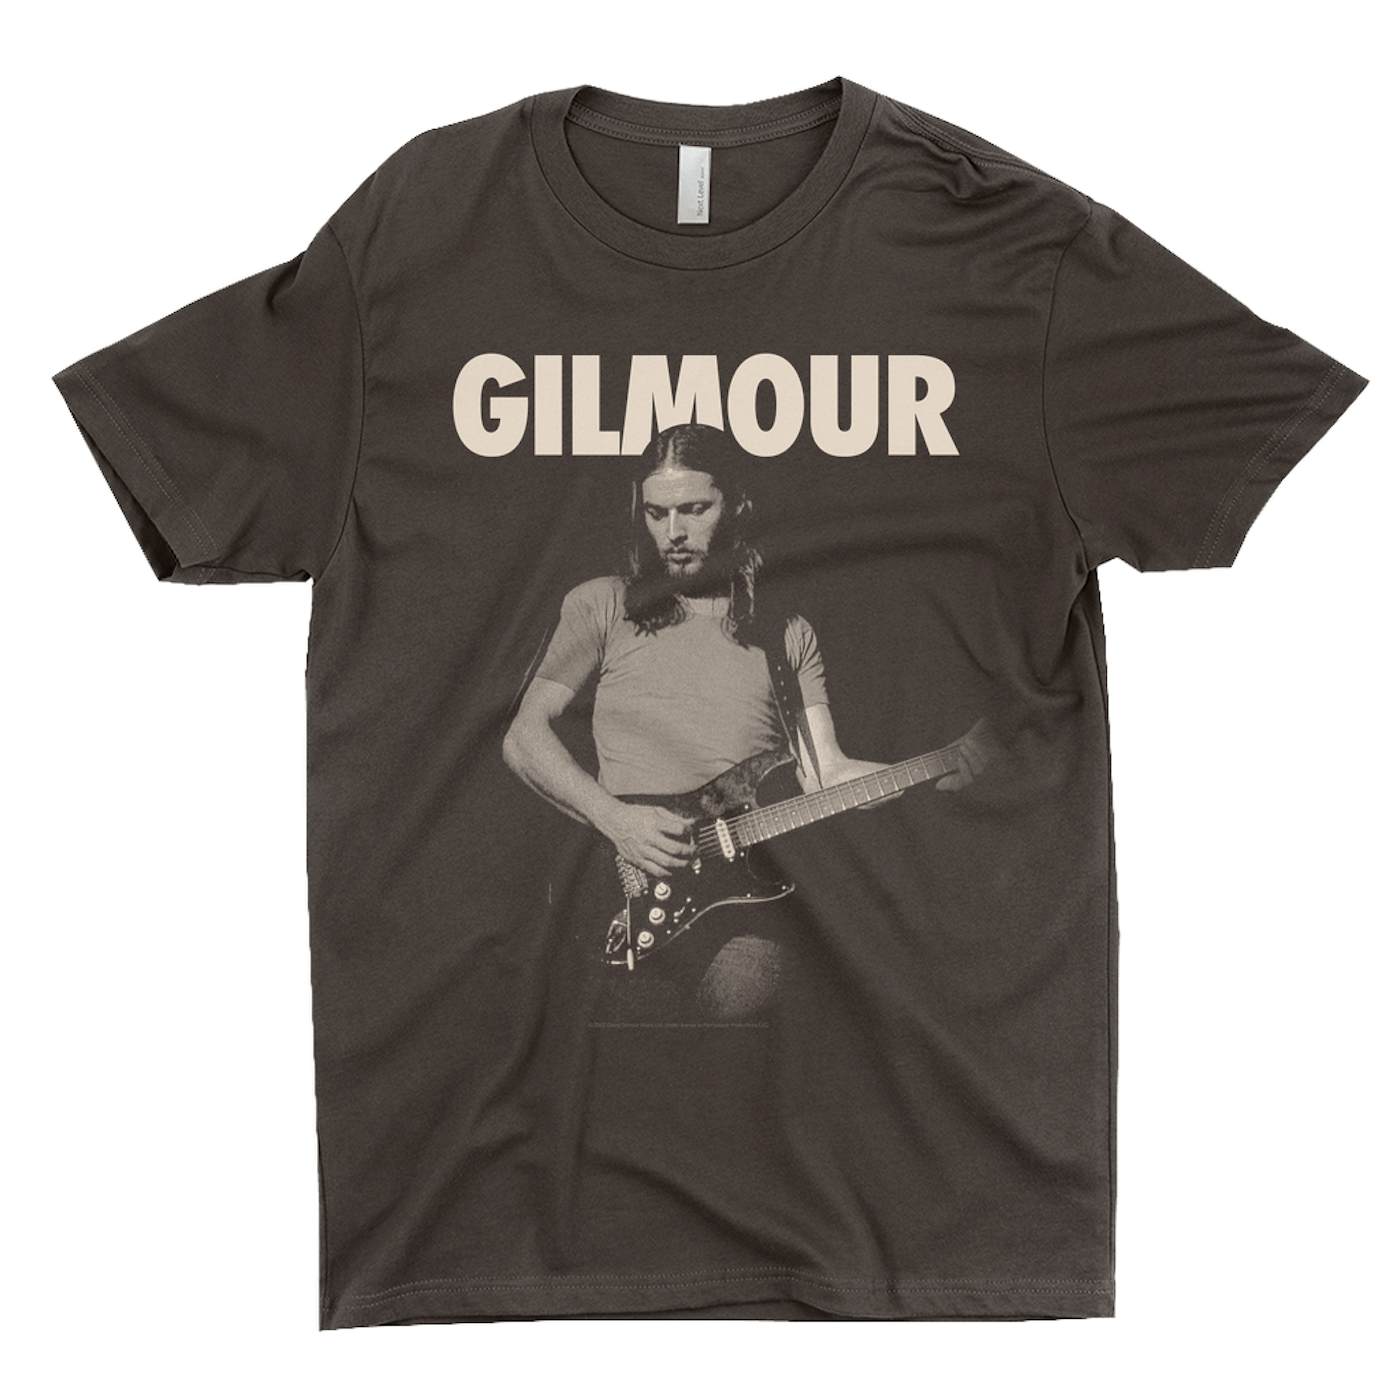 David Gilmour T-Shirt | Young David Gilmour and Bold Logo David Gilmour Shirt